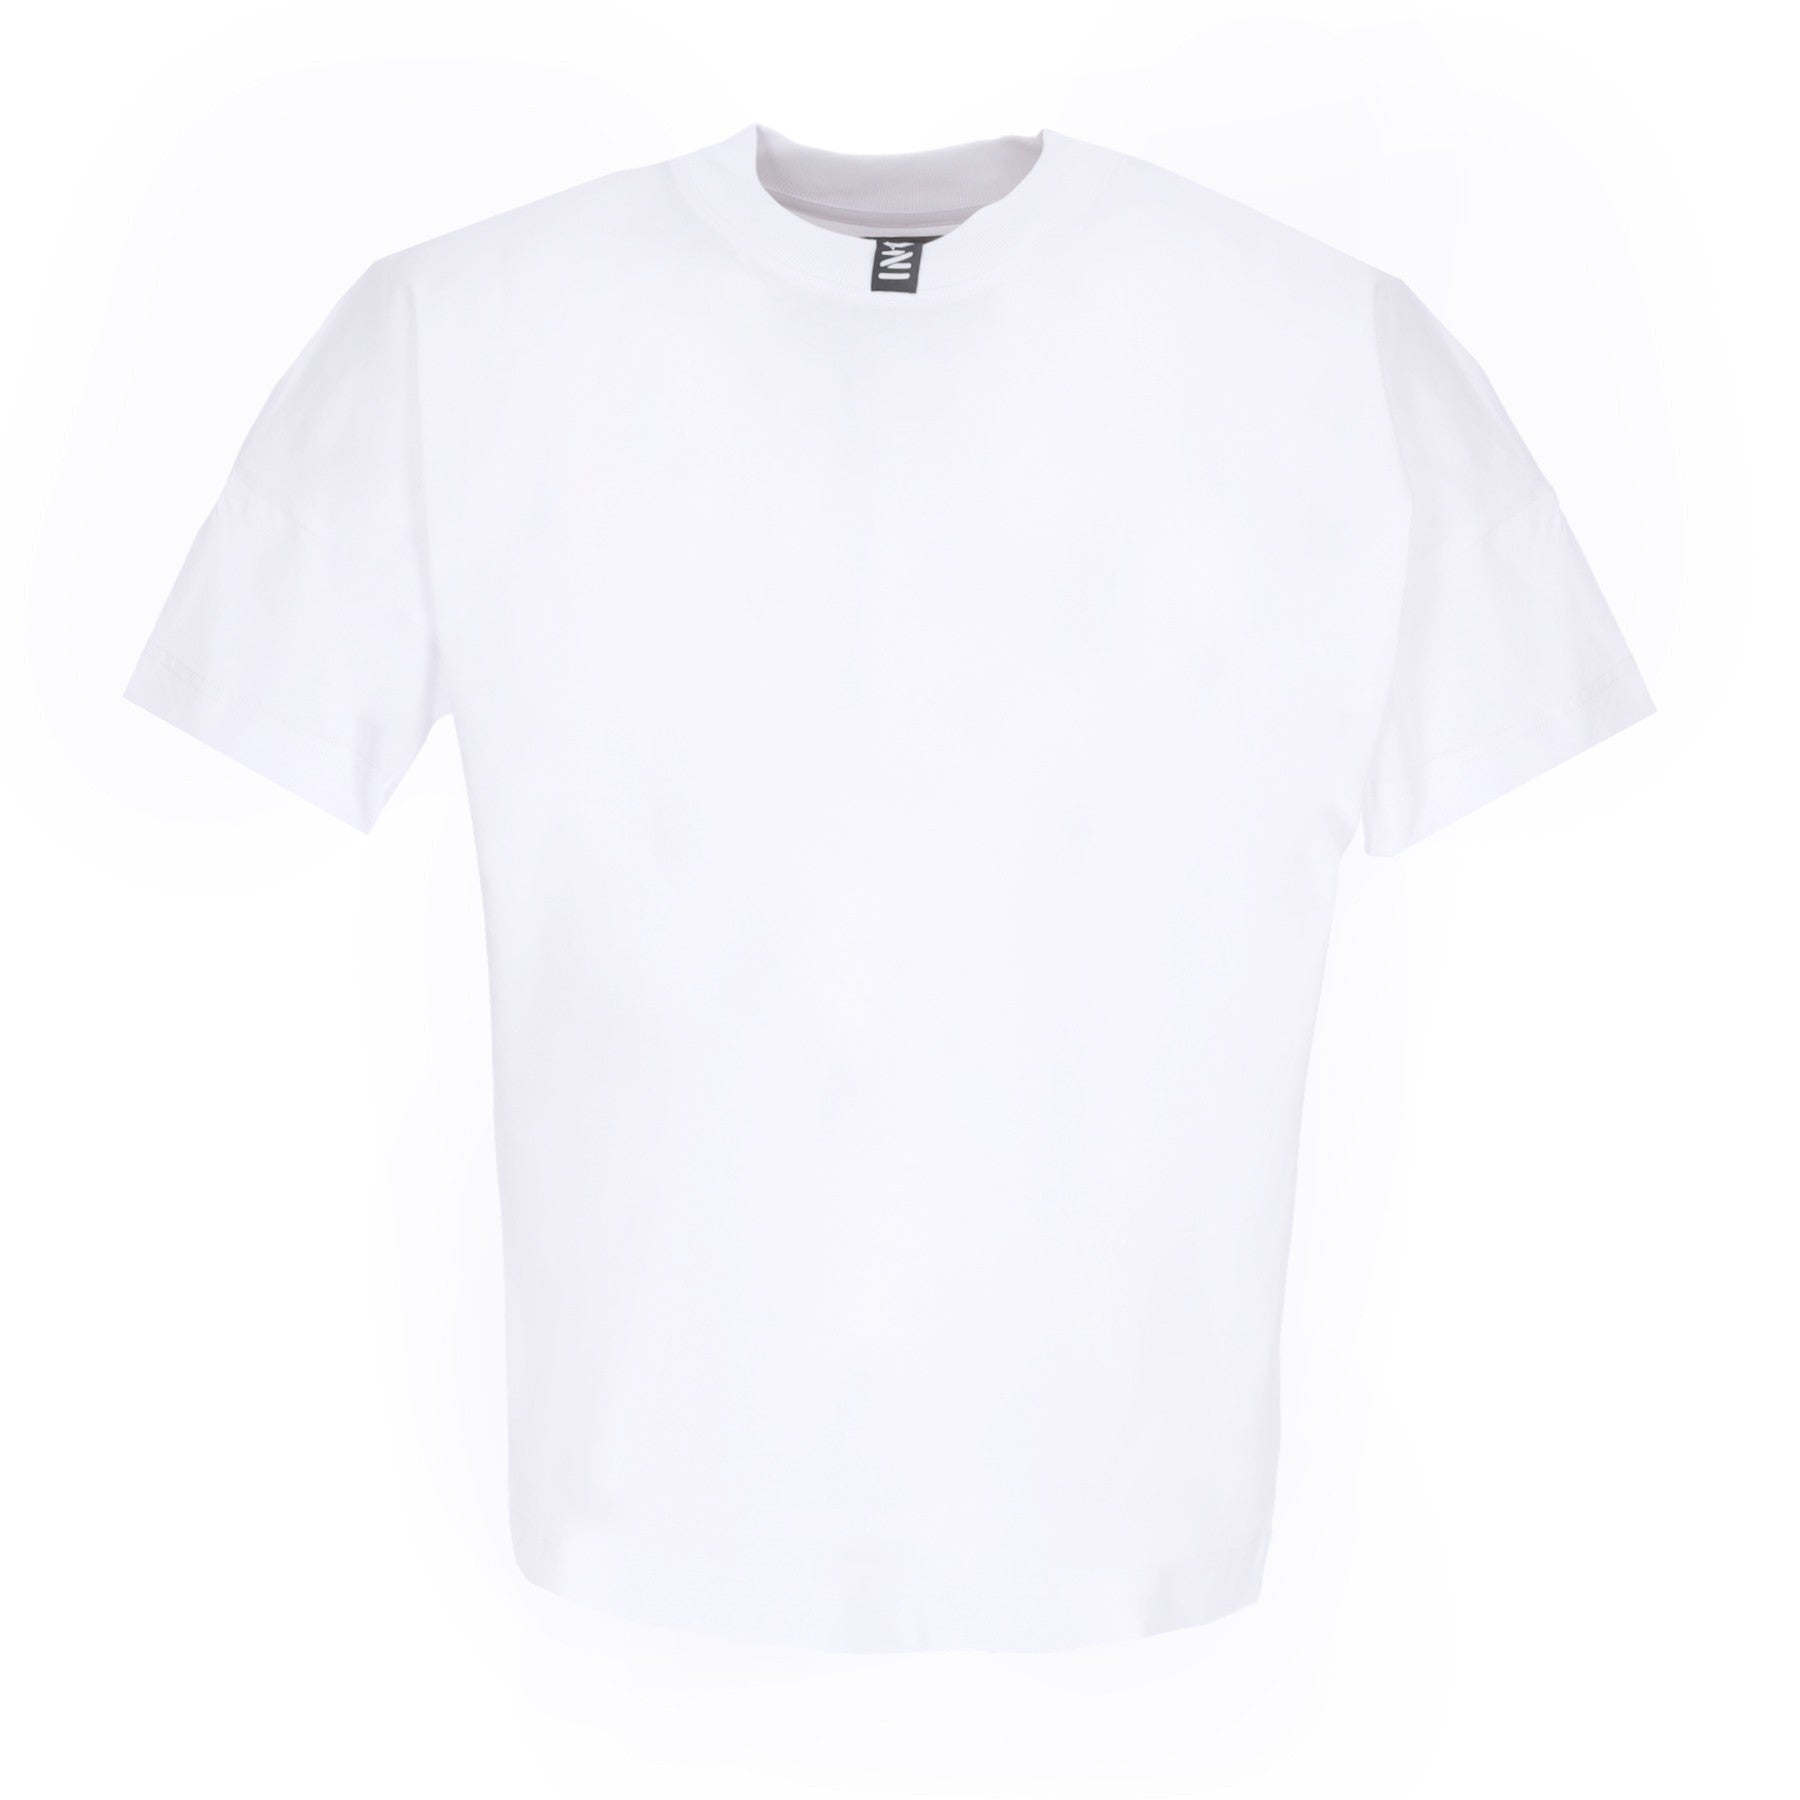 Homeward T2 White Men's T-Shirt